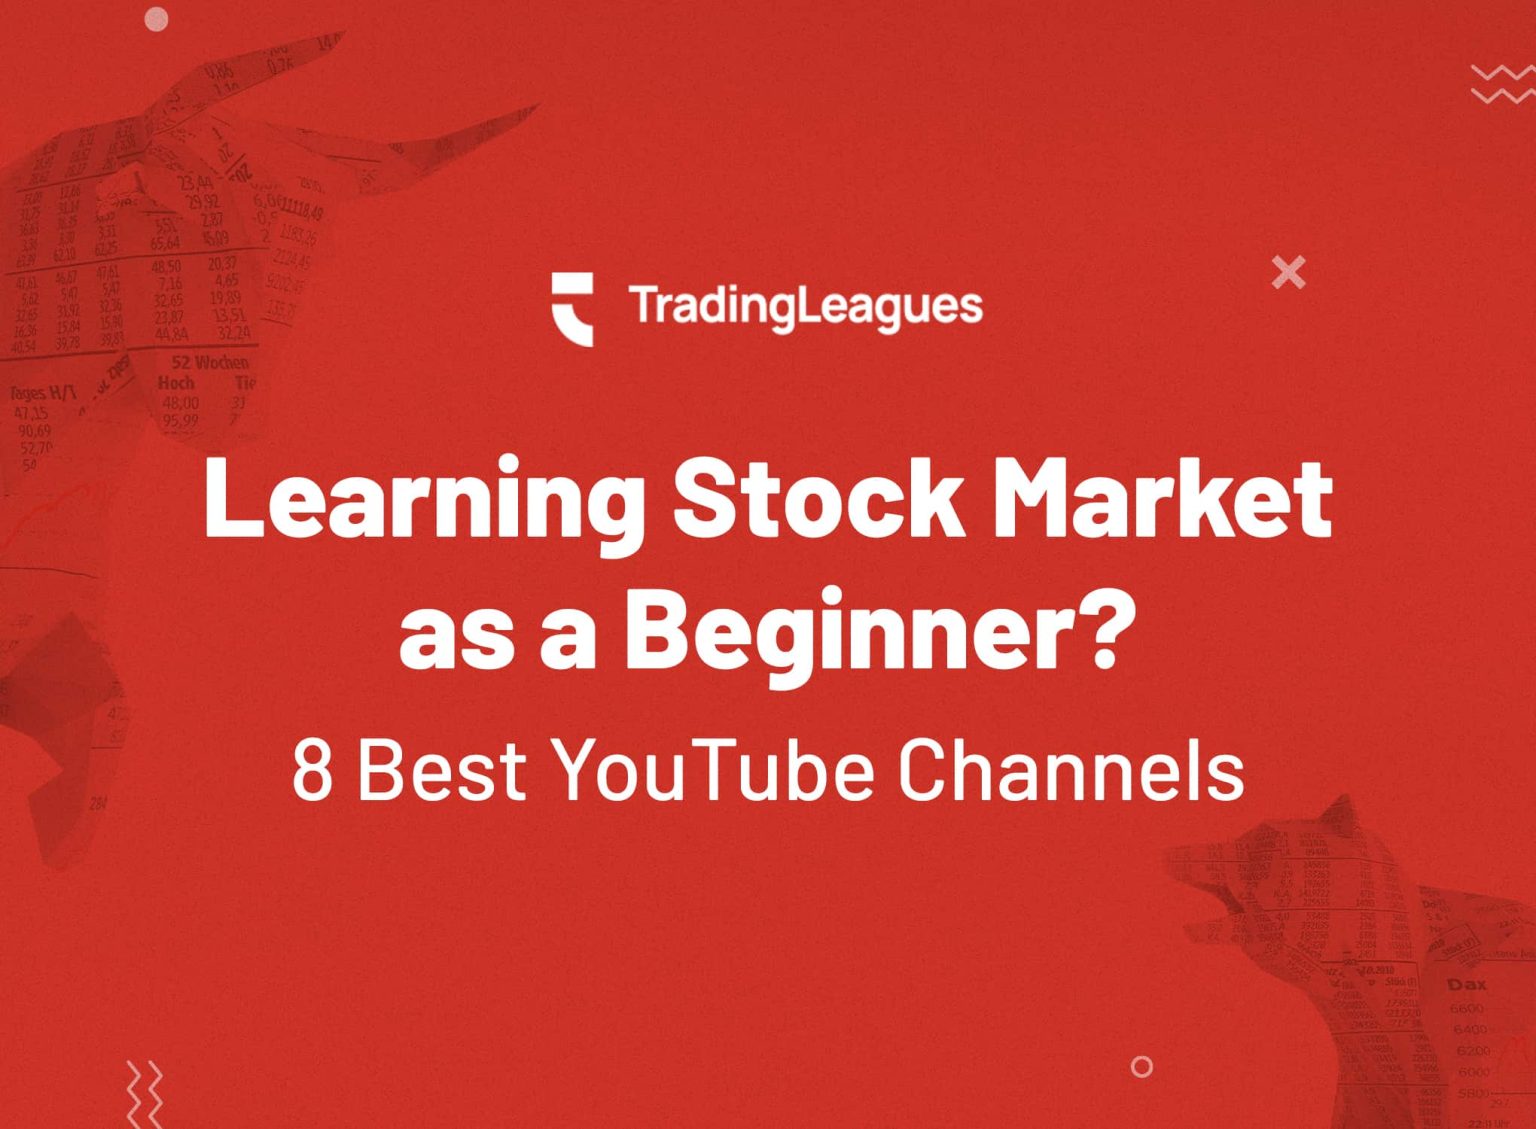 8 Best YouTube Channels to learn stock market